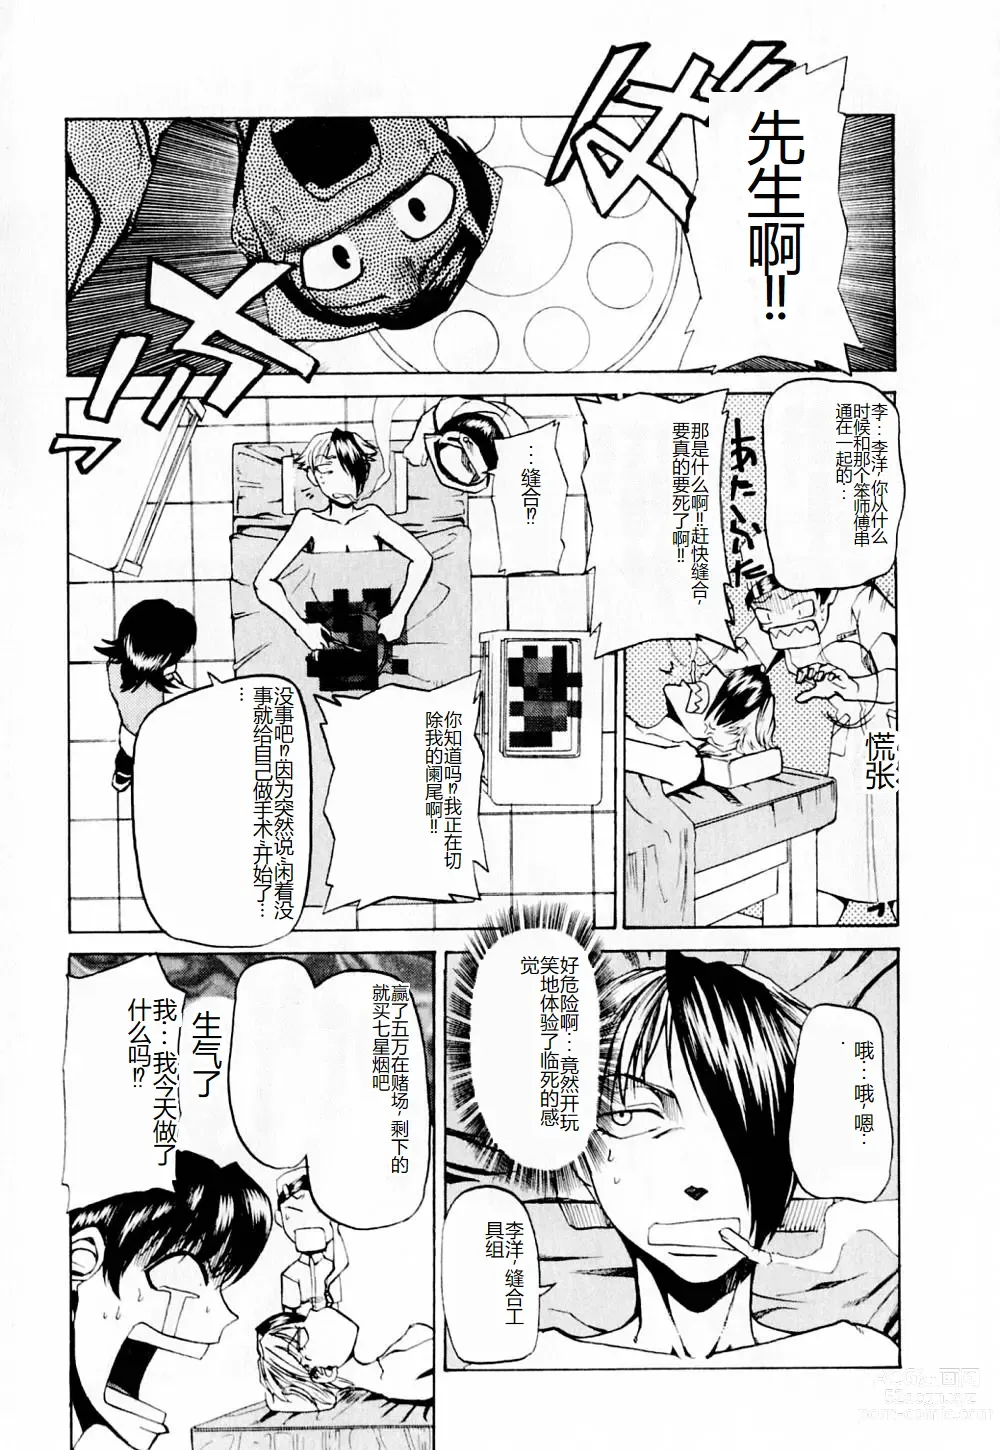 Page 206 of manga 去医院吧!!